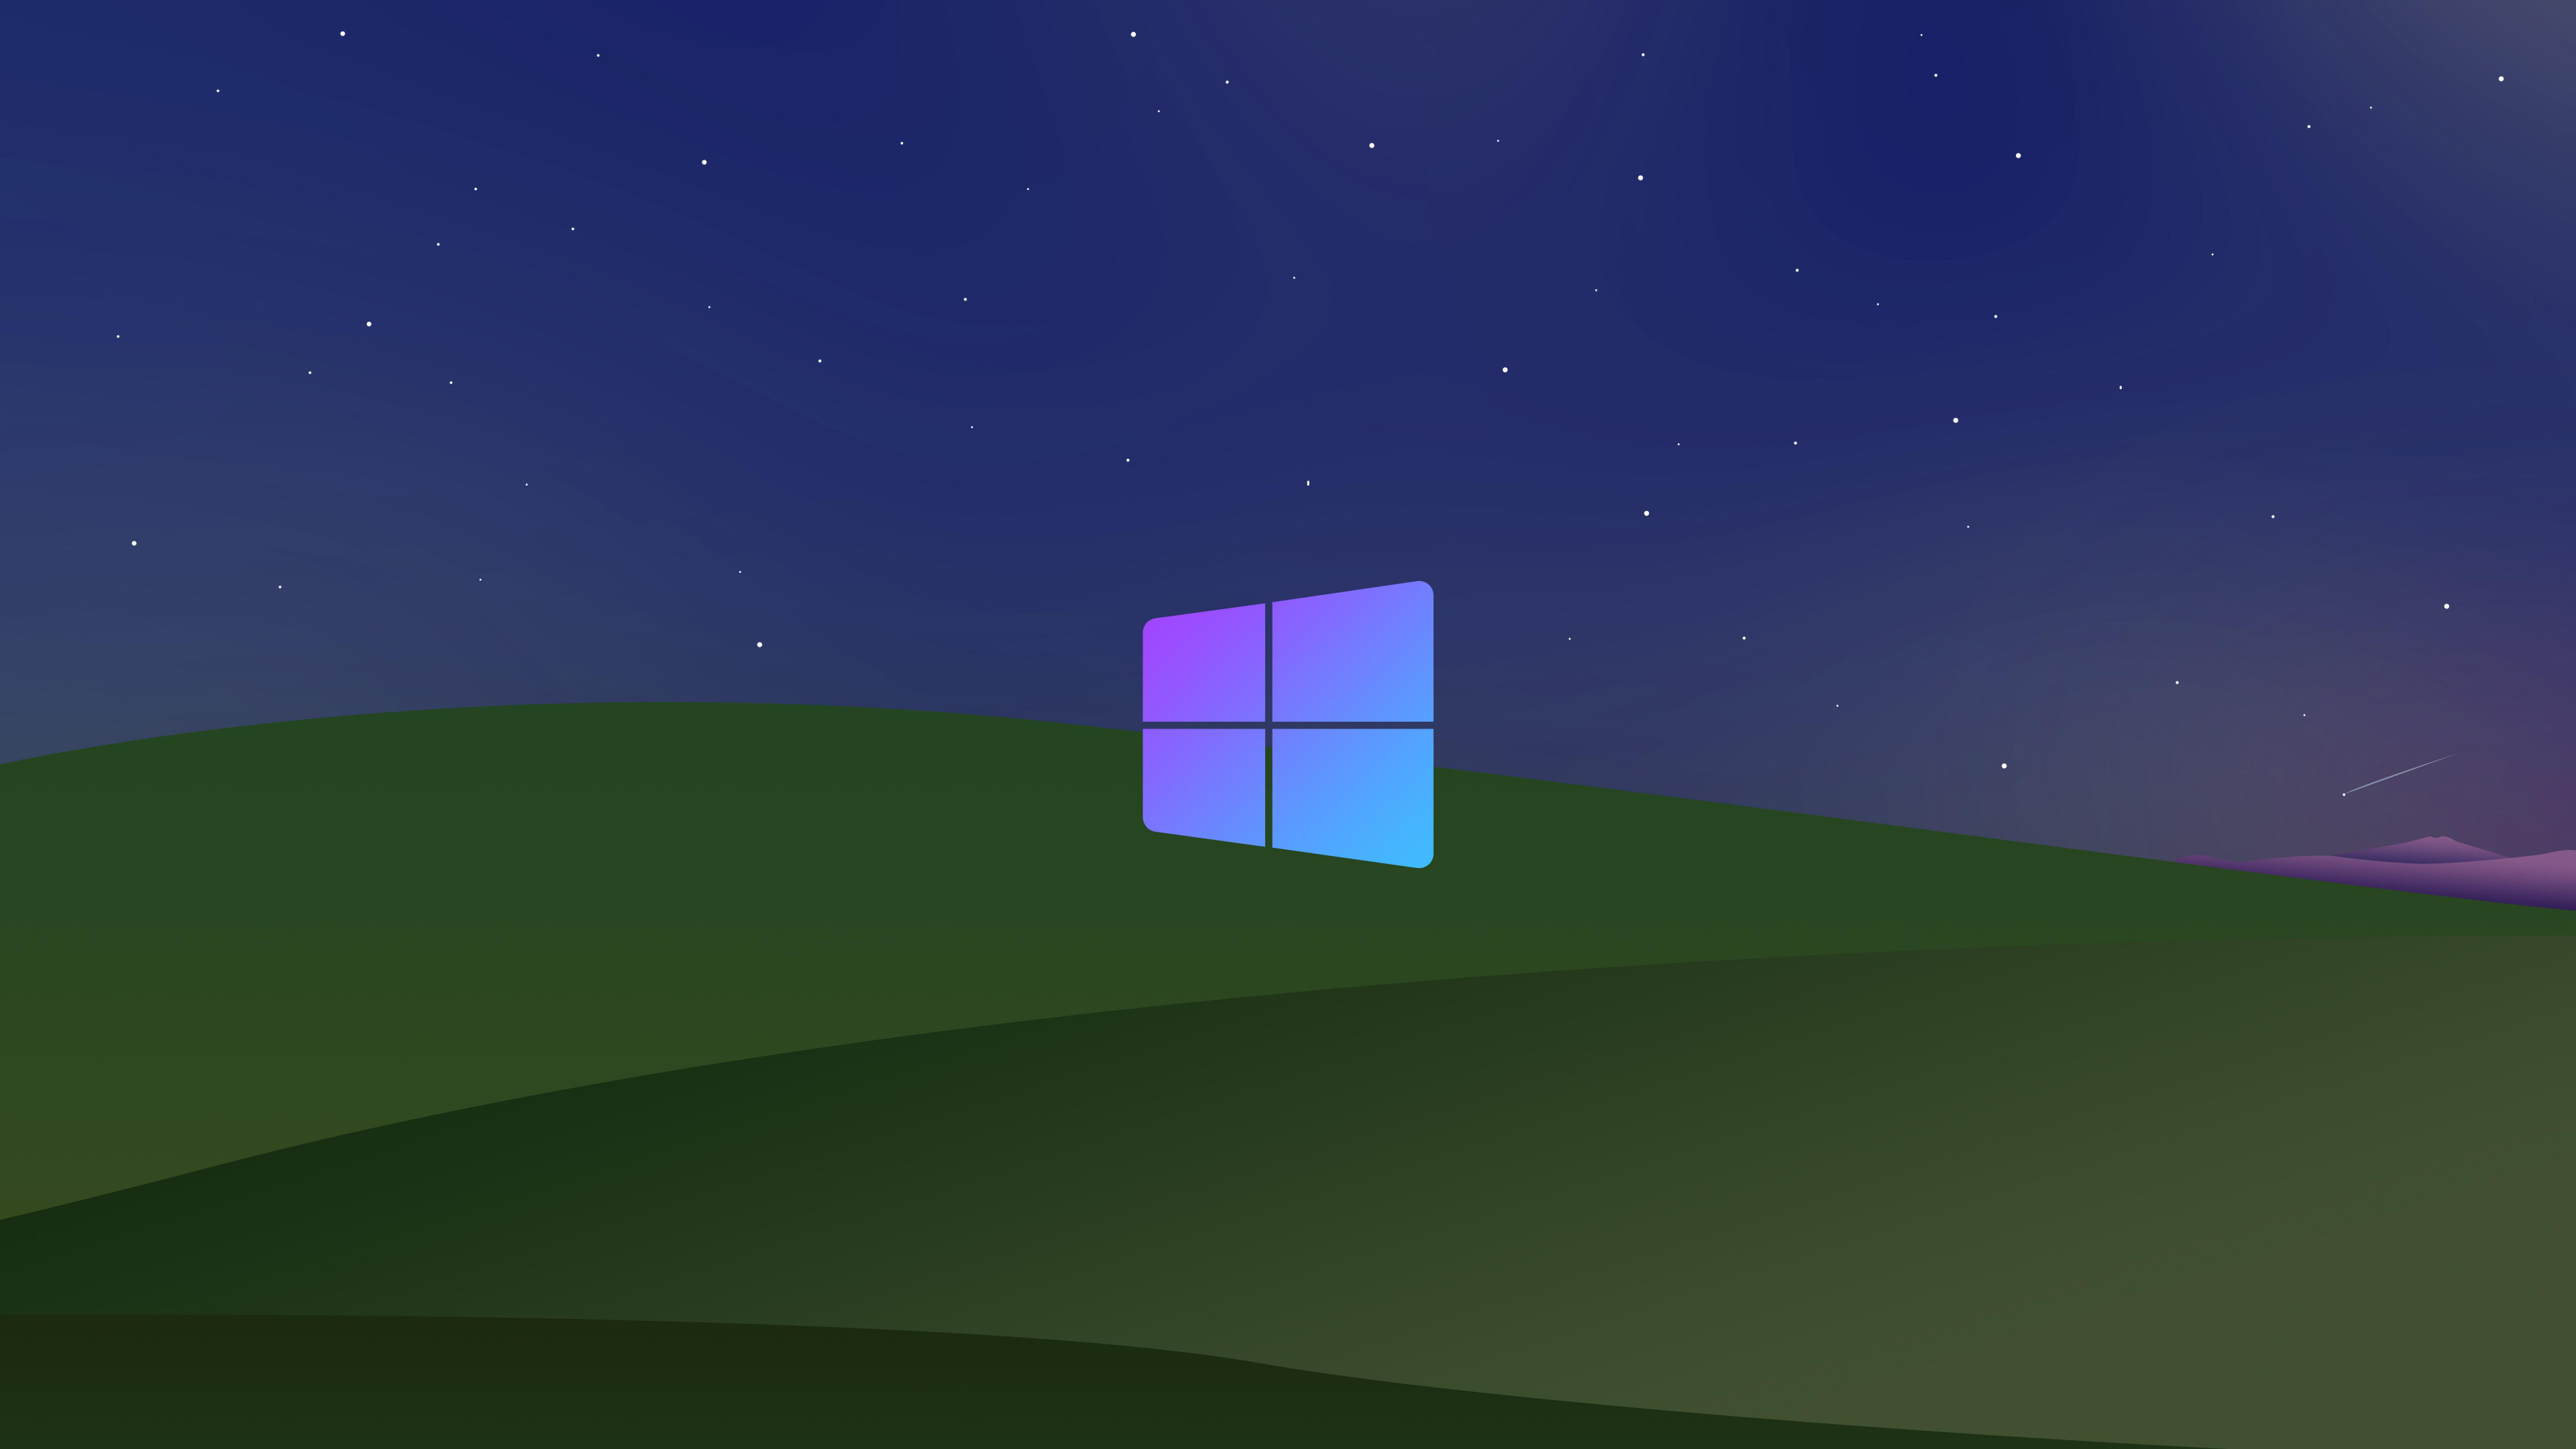 Hình nền Windows XP: Làm việc trên máy tính sẽ trở nên thú vị hơn với hình nền Windows XP thân quen. Hình ảnh sẽ mang đến một cảm giác đáng yêu và gợi nhớ về những kỷ niệm đáng nhớ của tuổi thơ. Hãy để hình nền này đưa bạn trở lại quá khứ với một cách thú vị.